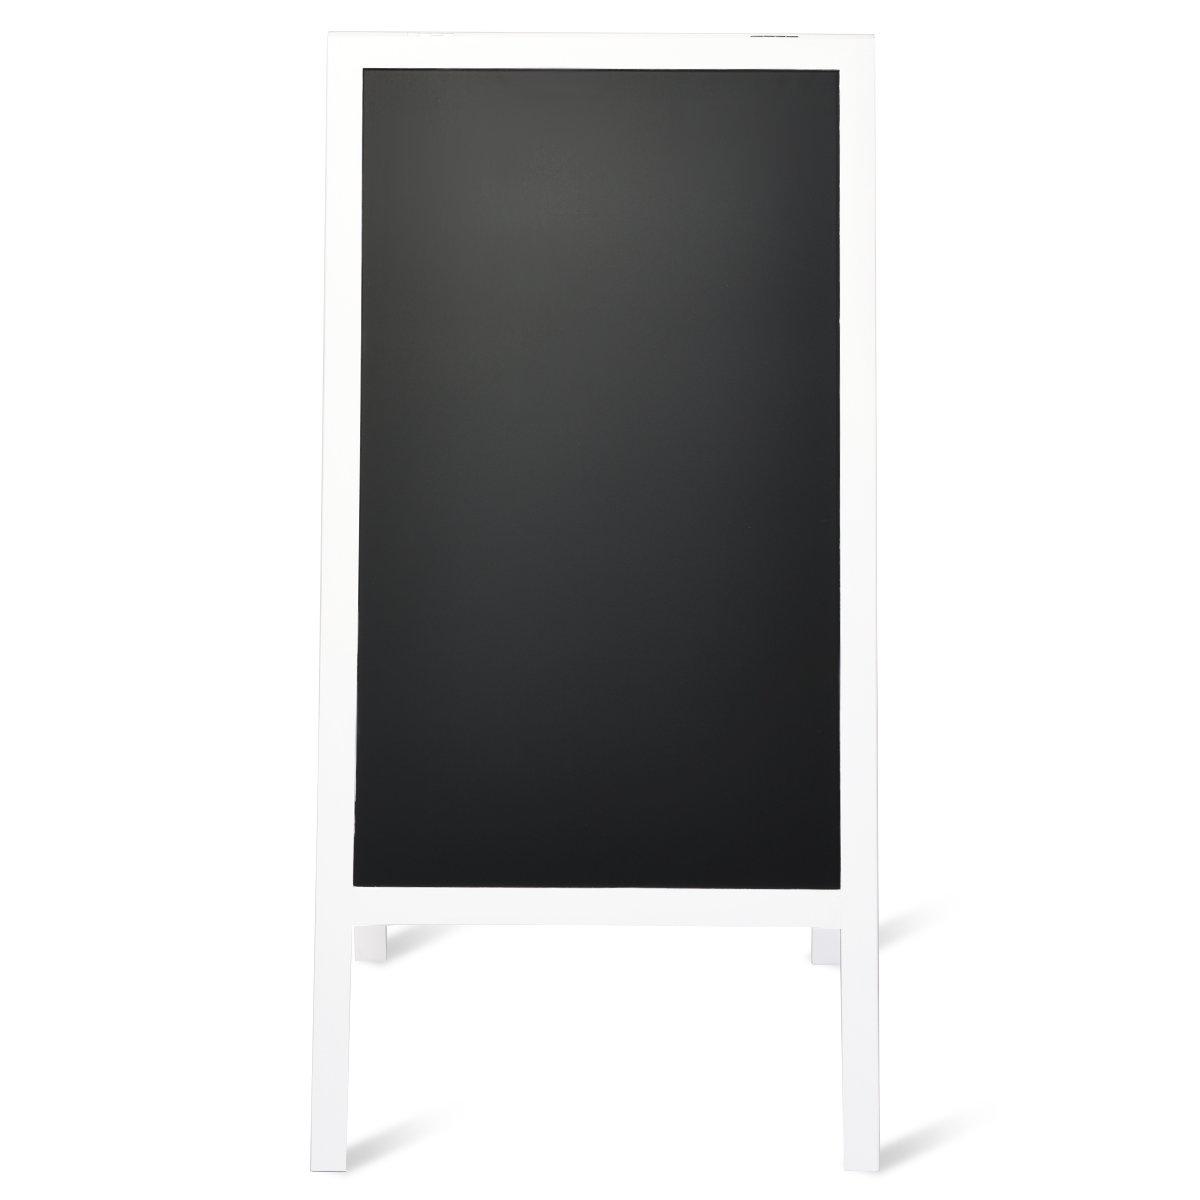 Double-Sided Chalkboard Foldable Advertising Board